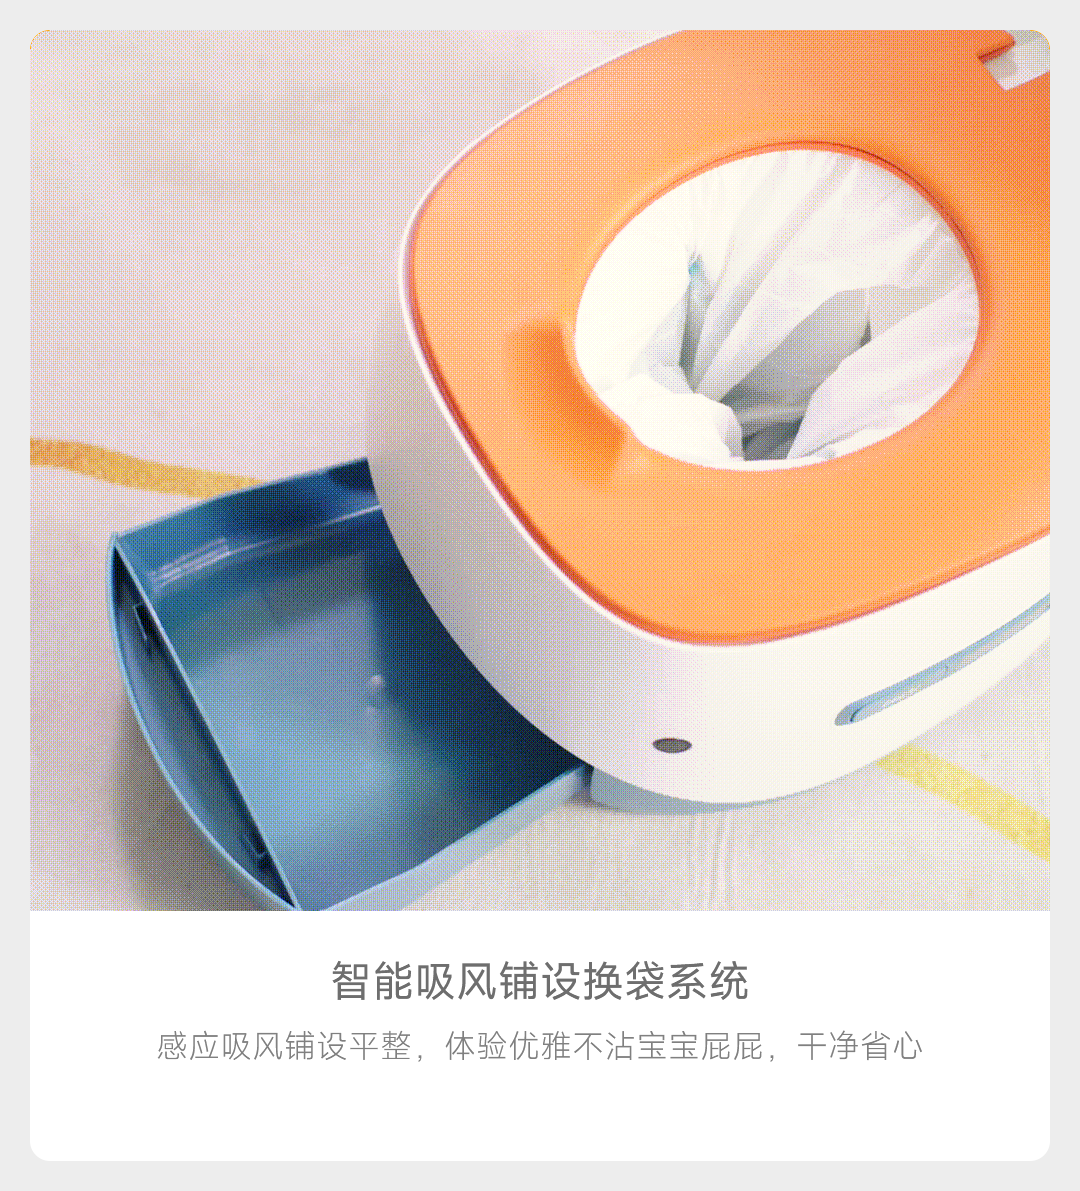 Умный детский горшок Xiaomi уберет за малышом и упакует использованные подгузники (4 фото)